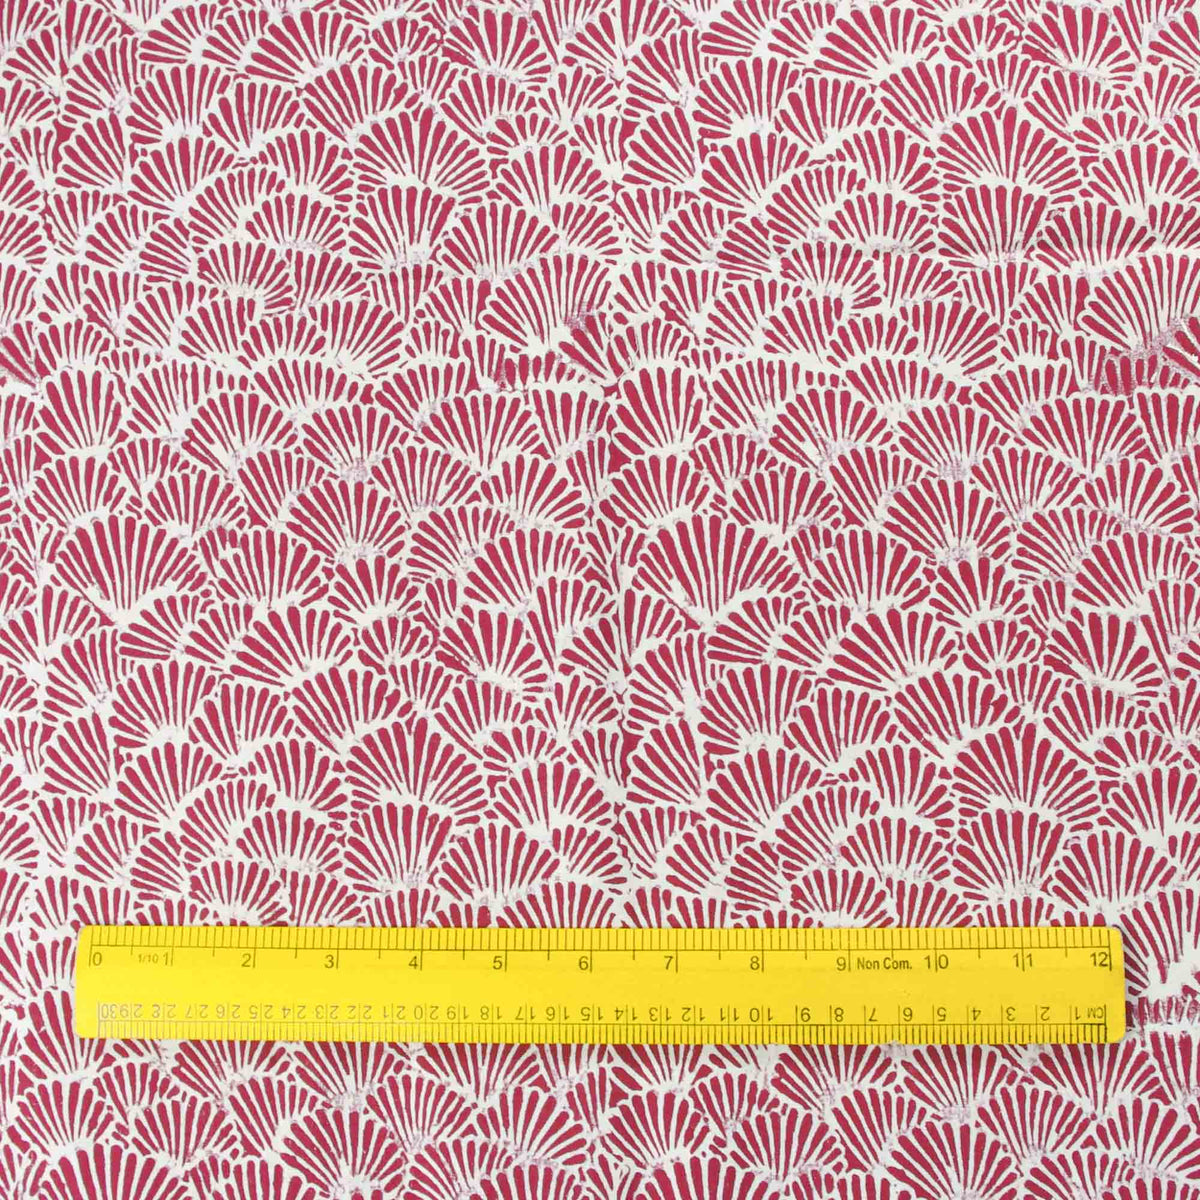 Stoff mit Blockdruck – Kastanienbraune rote Muscheln (Design 406)